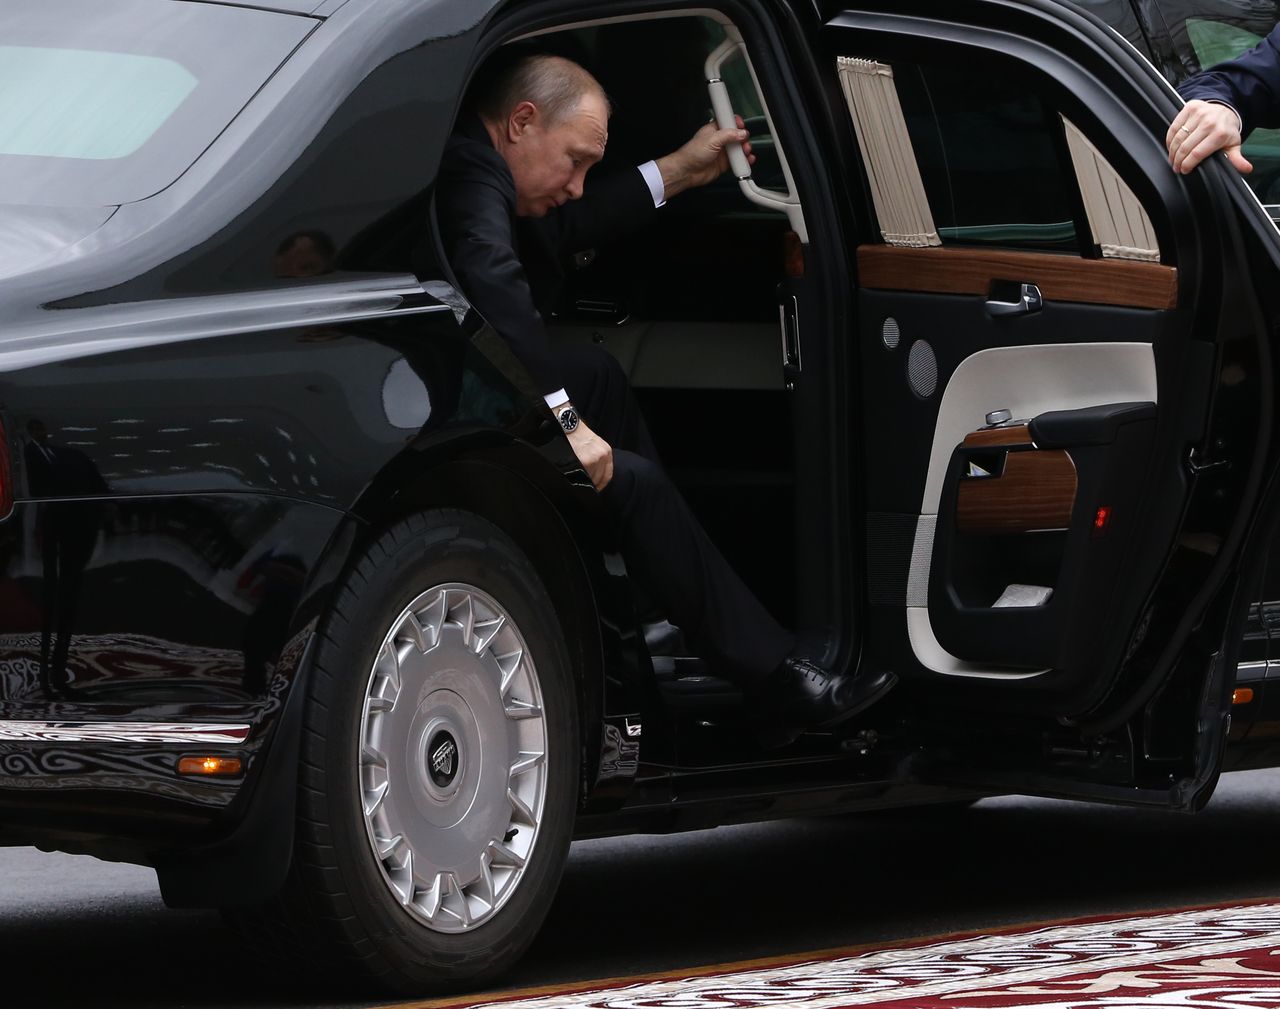 Drzwi limuzyny Putina nie są tak potężne jak amerykańskiej "Bestii"